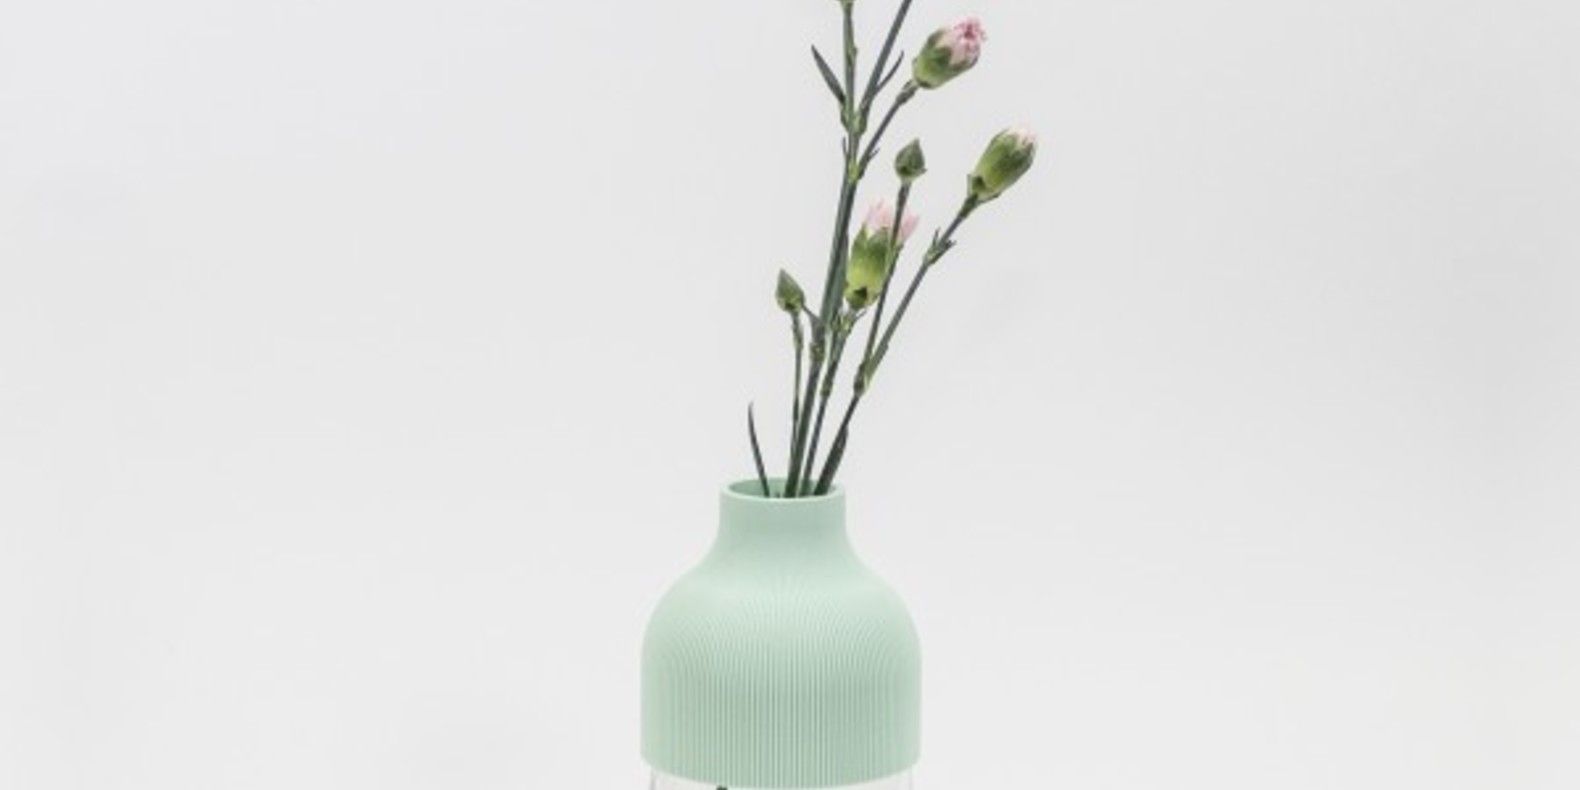 VASE1, 3D-gedruckte Vase von den Designern des UAU Project